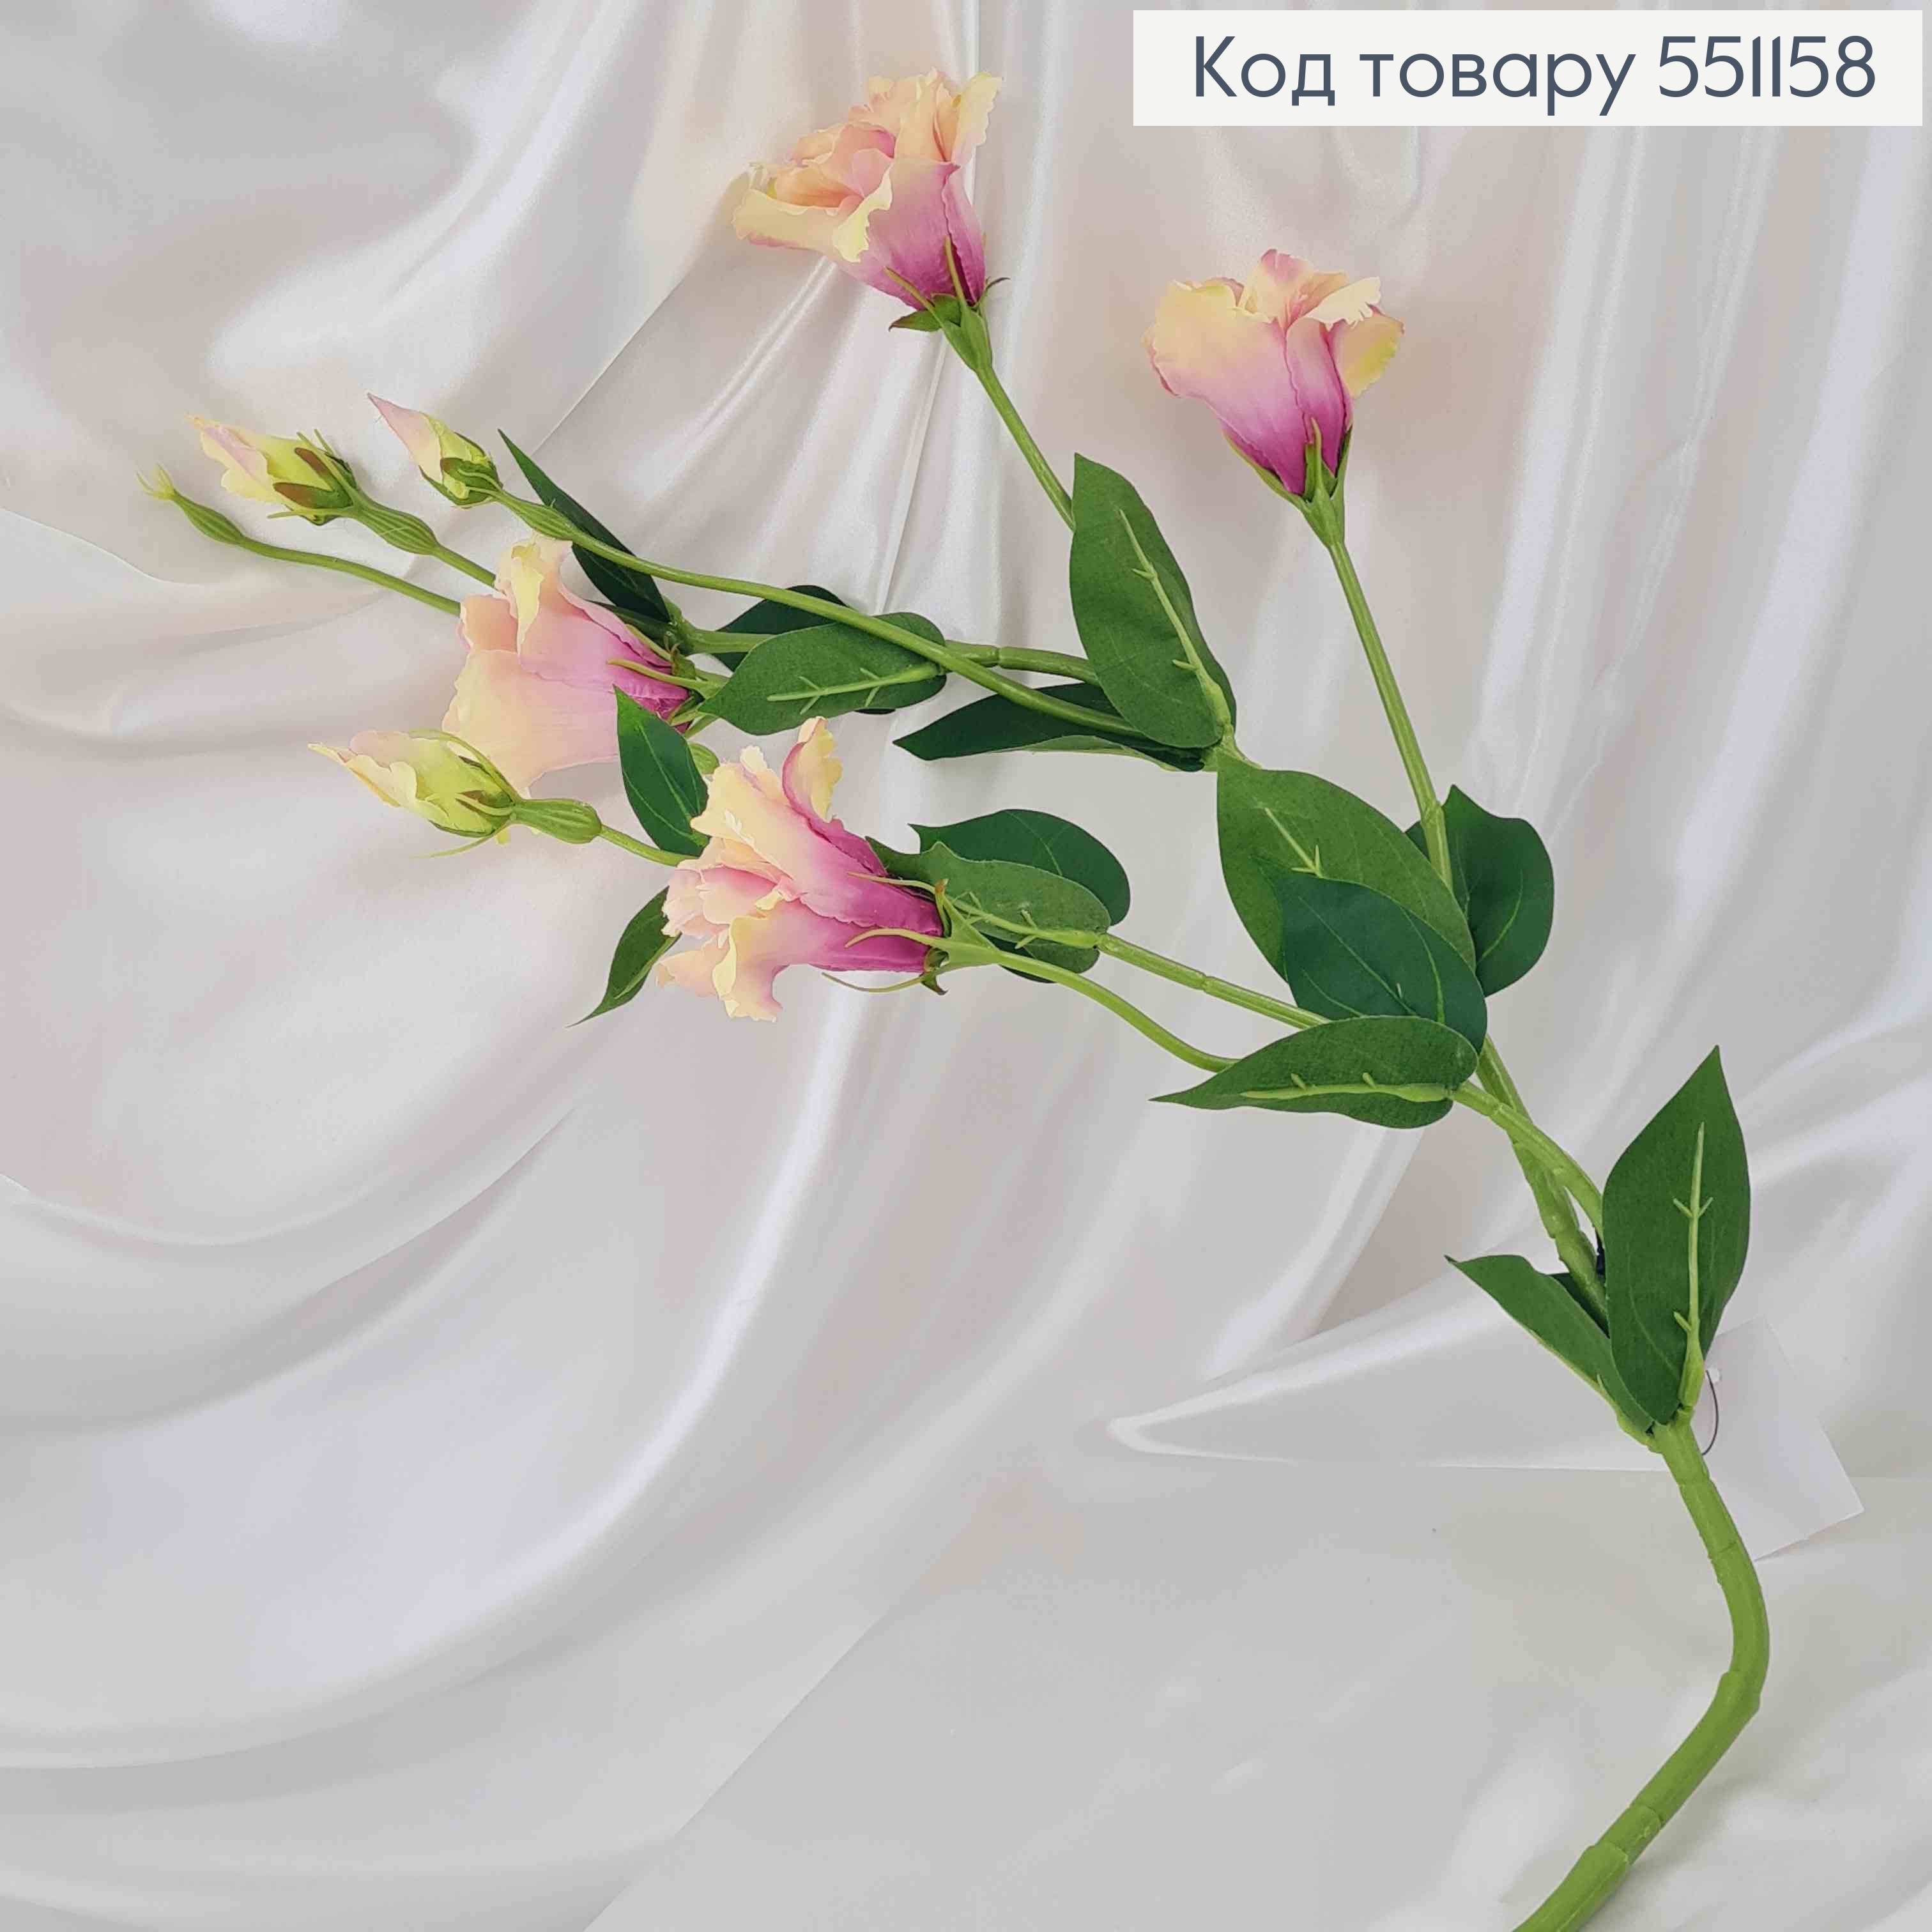 Штучна квітка Еустоми, МОЛОЧНО-ФІОЛЕТОВА, 4 квітки + 3 бутони, на металевому стержні, 82см 551158 фото 2